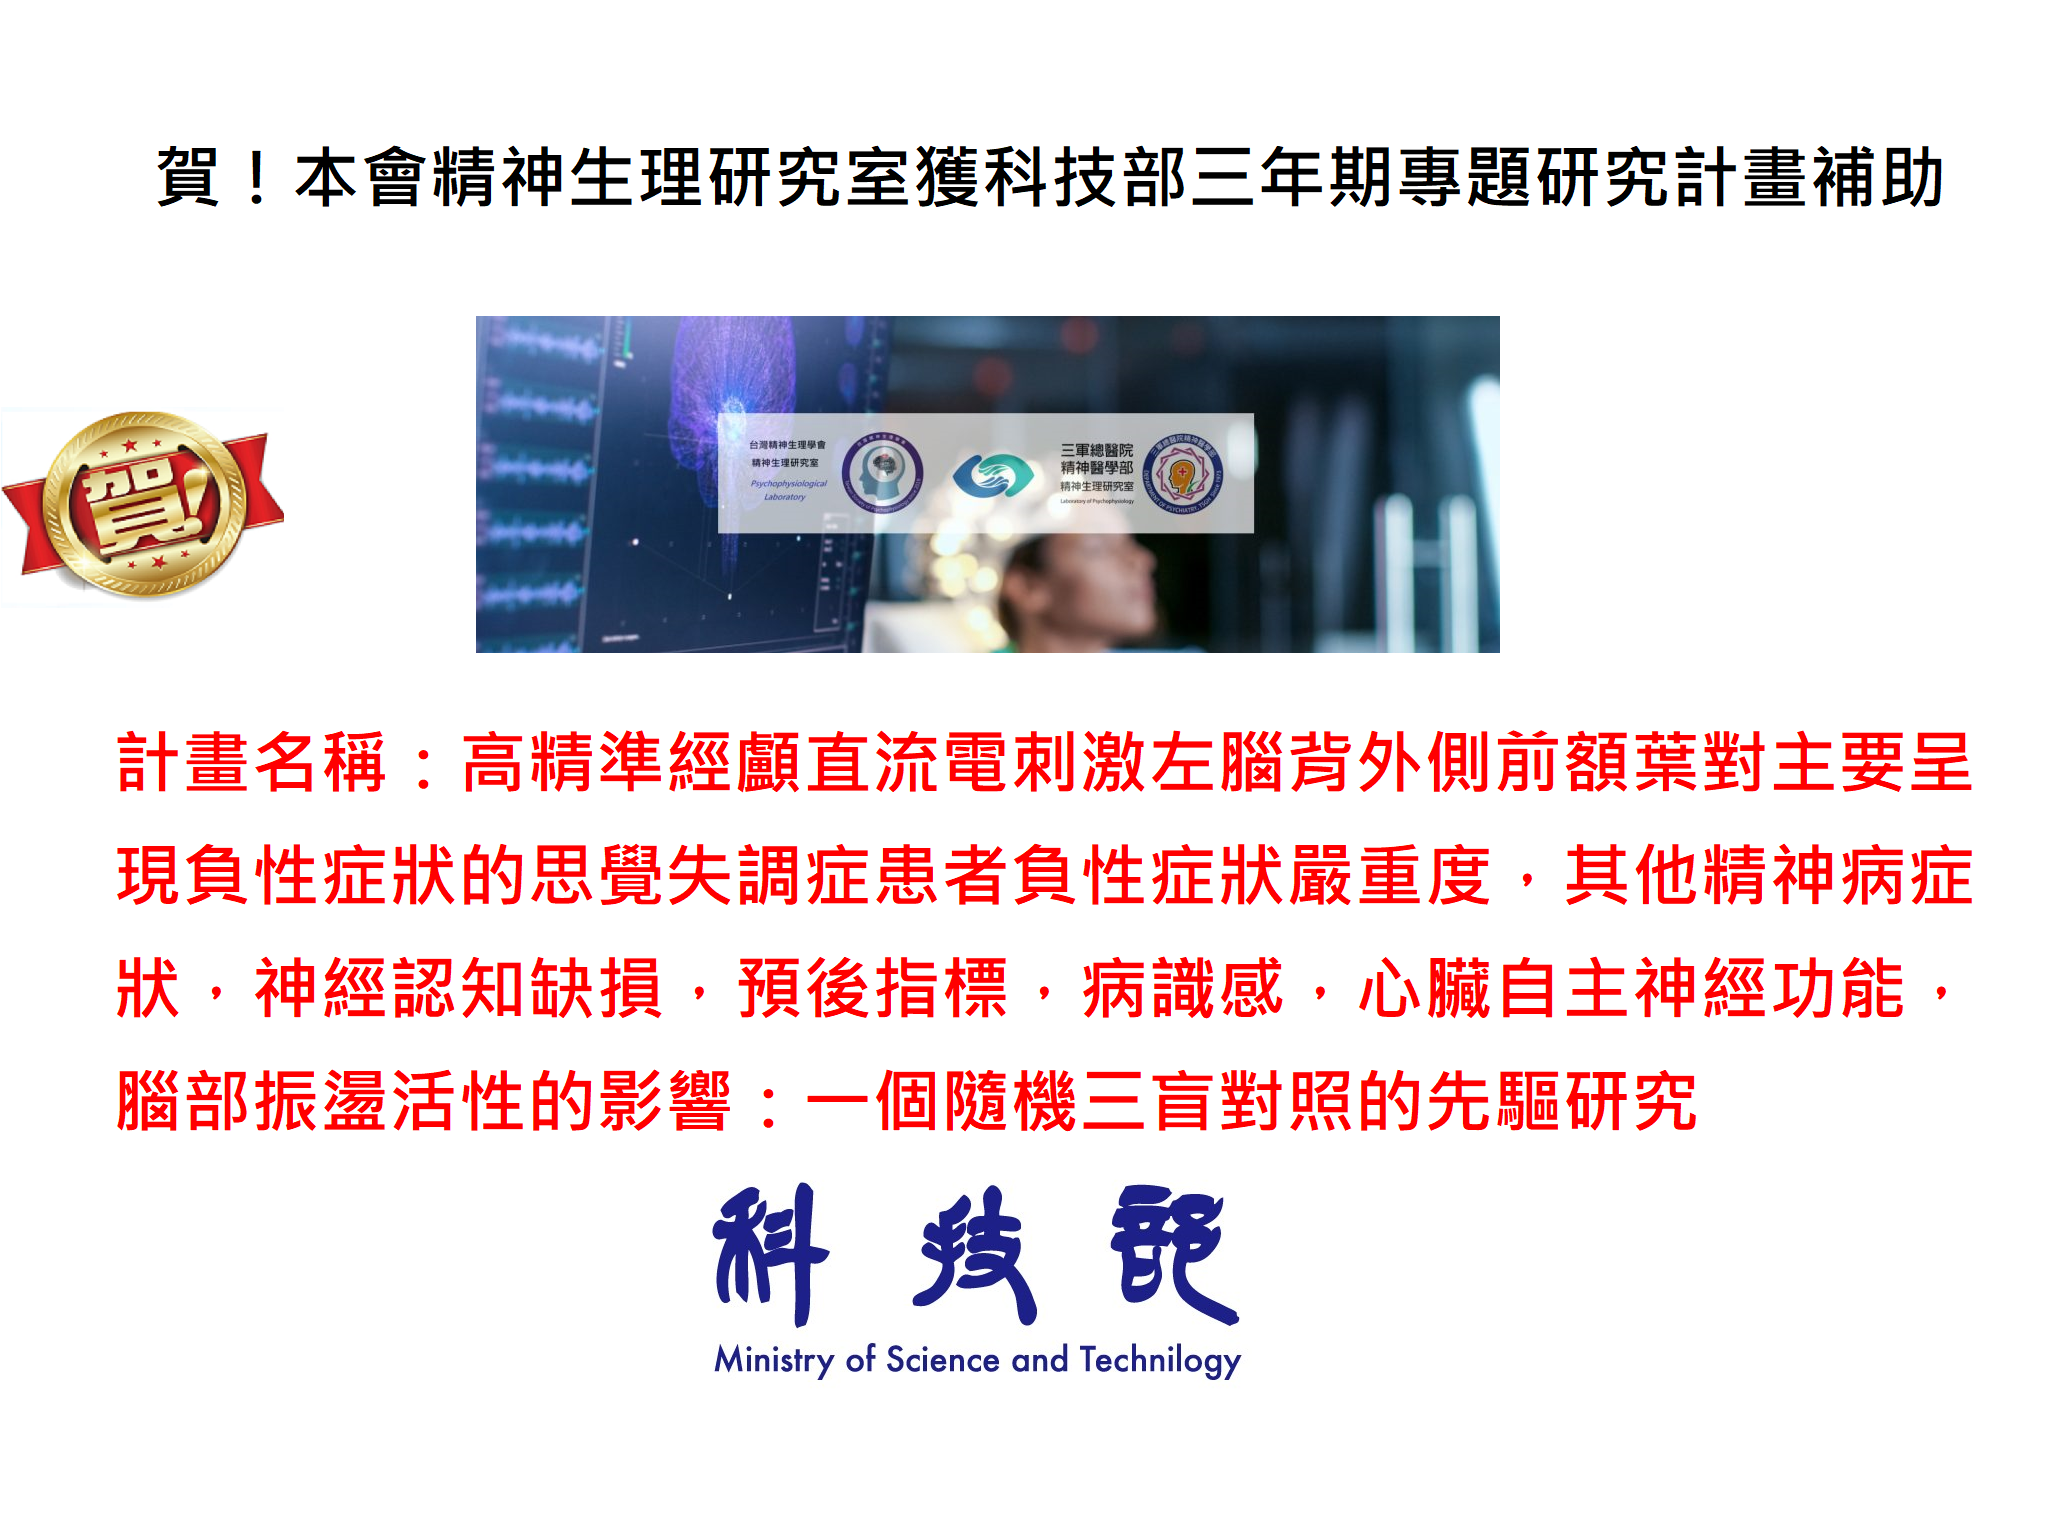 賀 本會精神生理研究室獲科技部三年期專題研究計畫補助 台灣精神生理學會